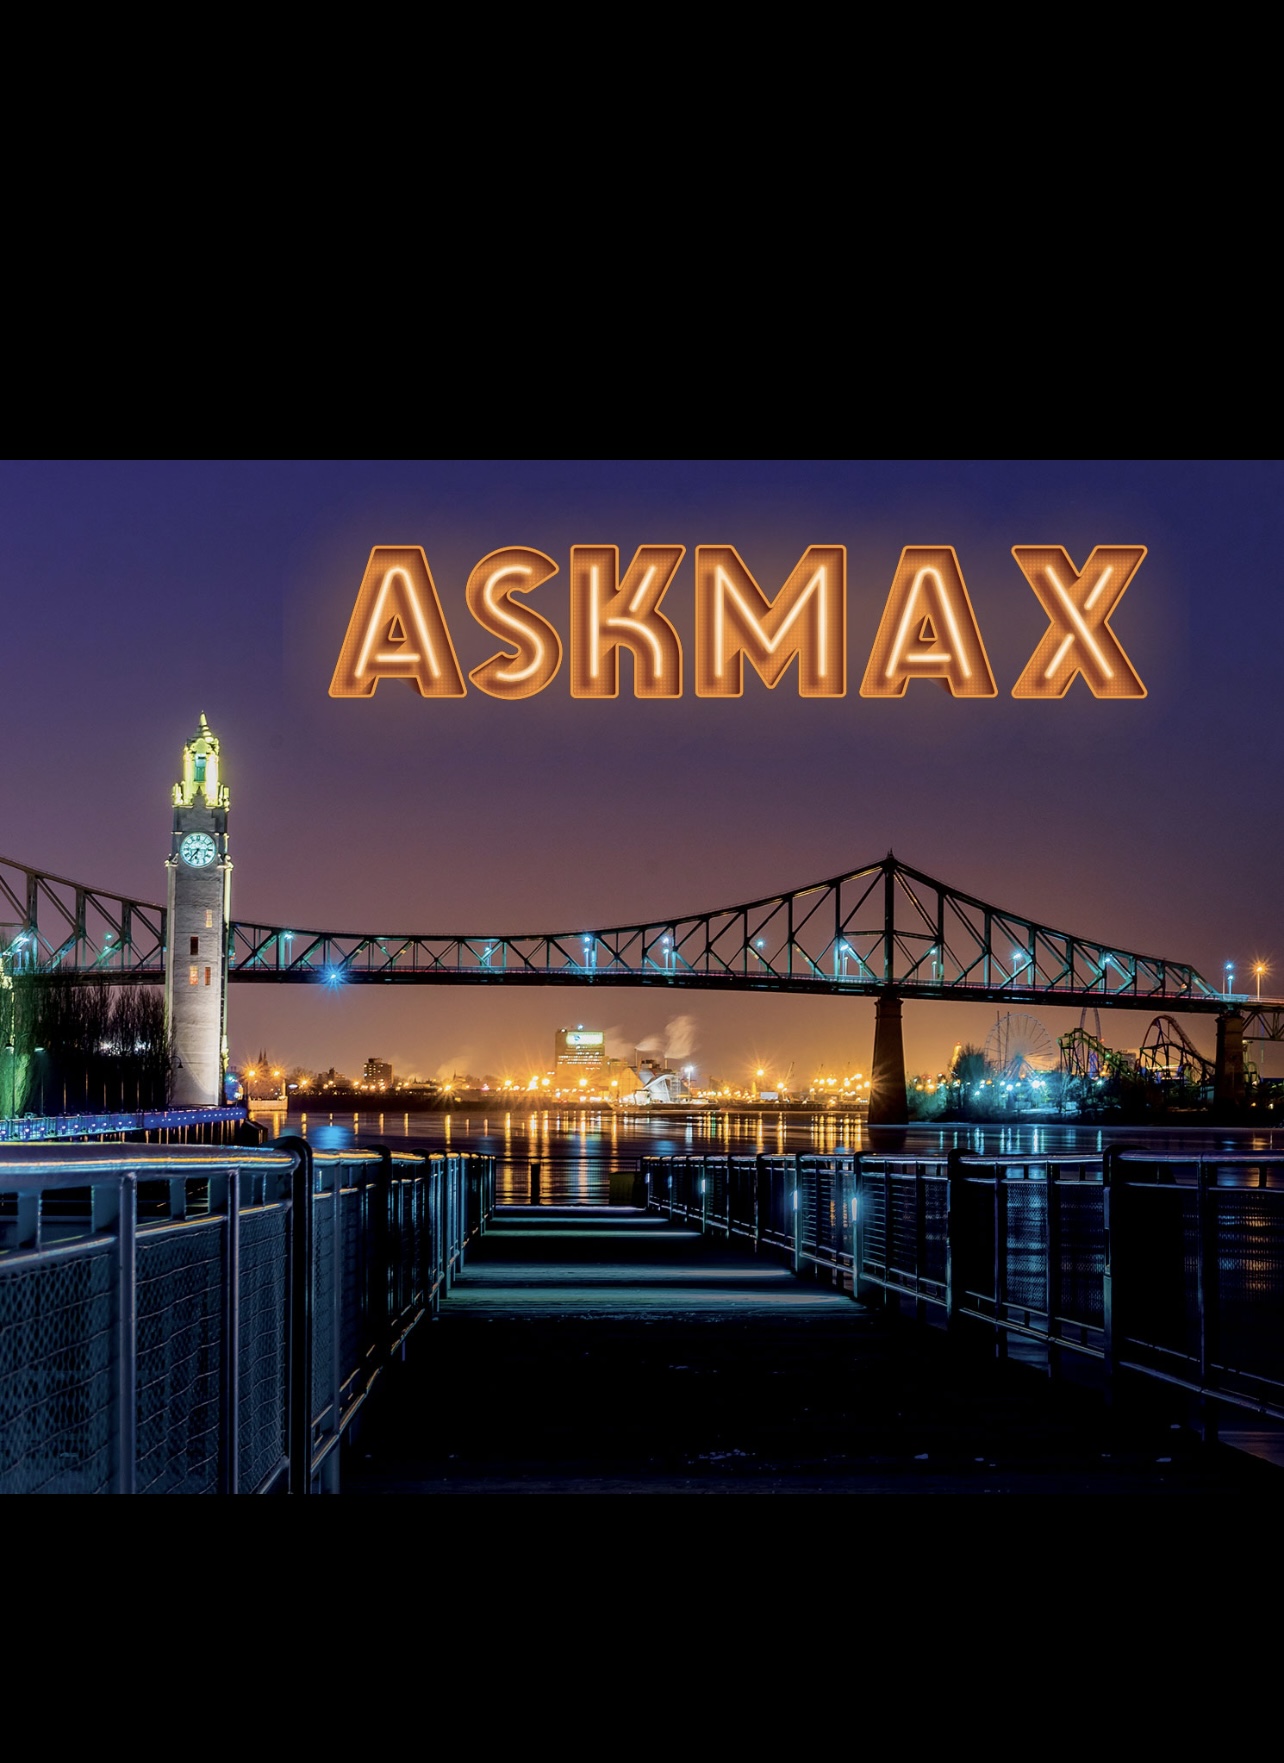 Le logo AskMax avec un pont dynamique en arrière-plan, incarnant l'esprit de notre communauté florissante et performante.